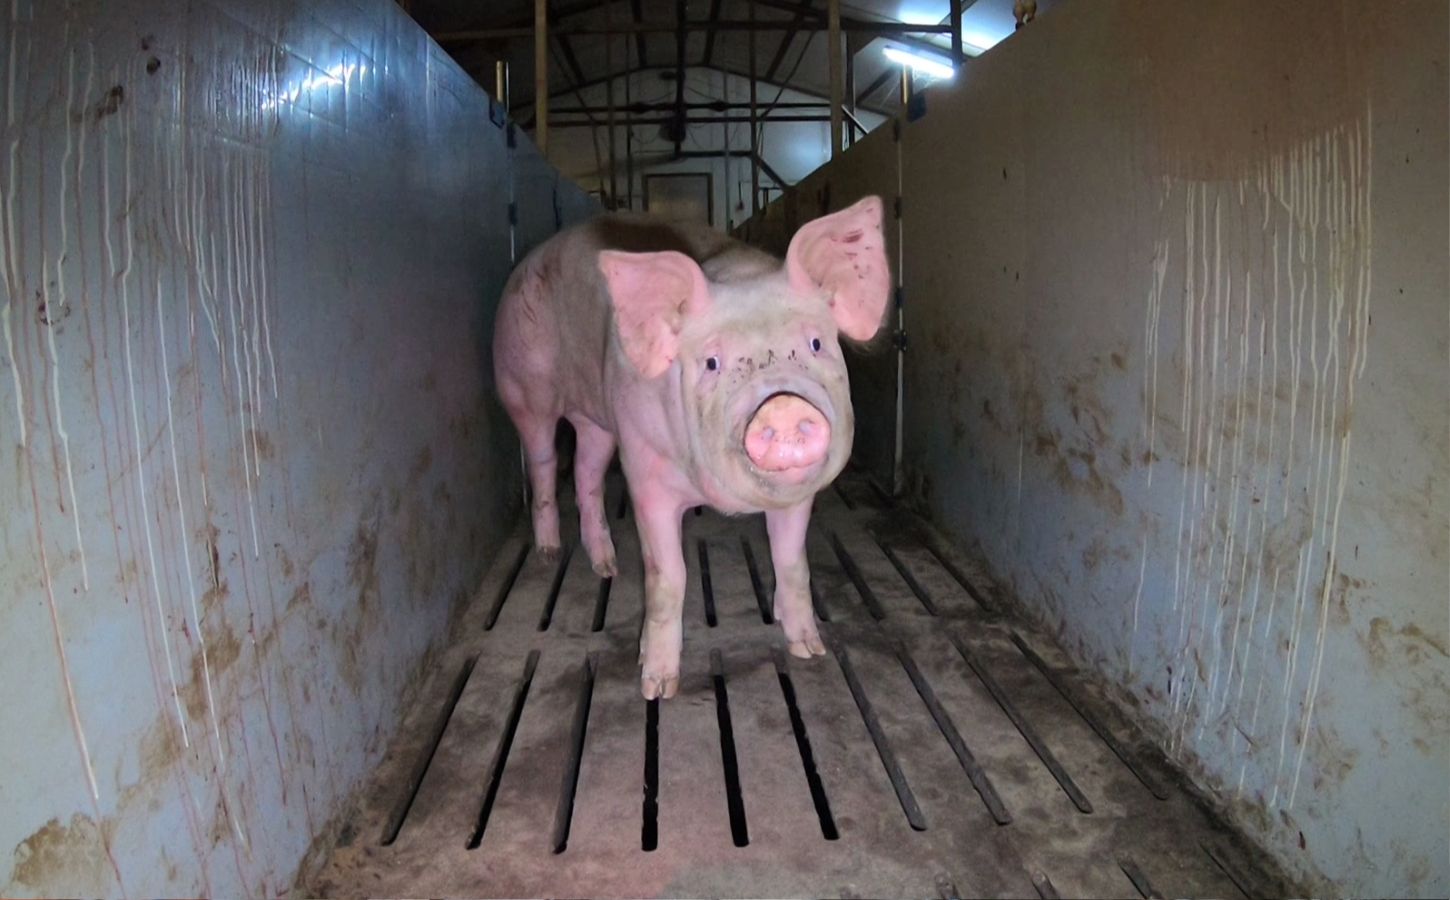 New To Netflix: 'Hogwood' Documentary Exposes Animal Abuse On UK Pig Farms